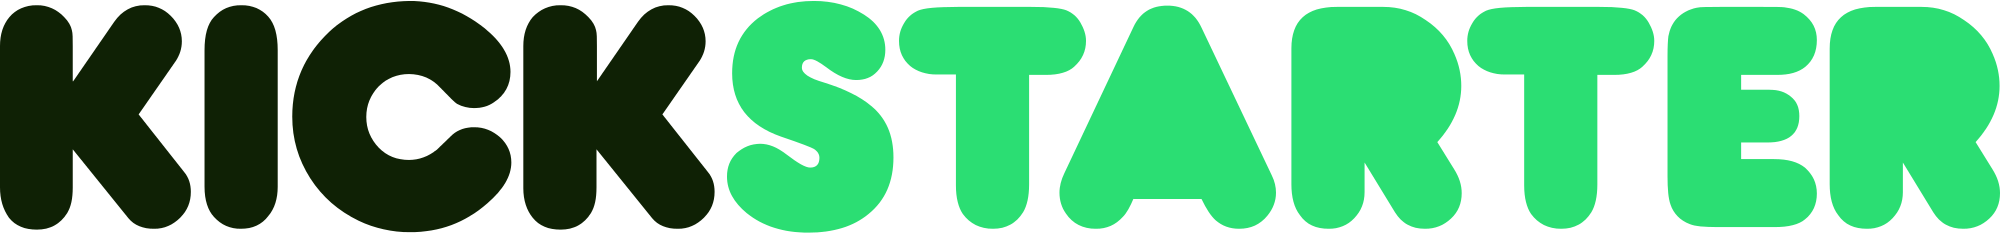 Kickstarter logo svg